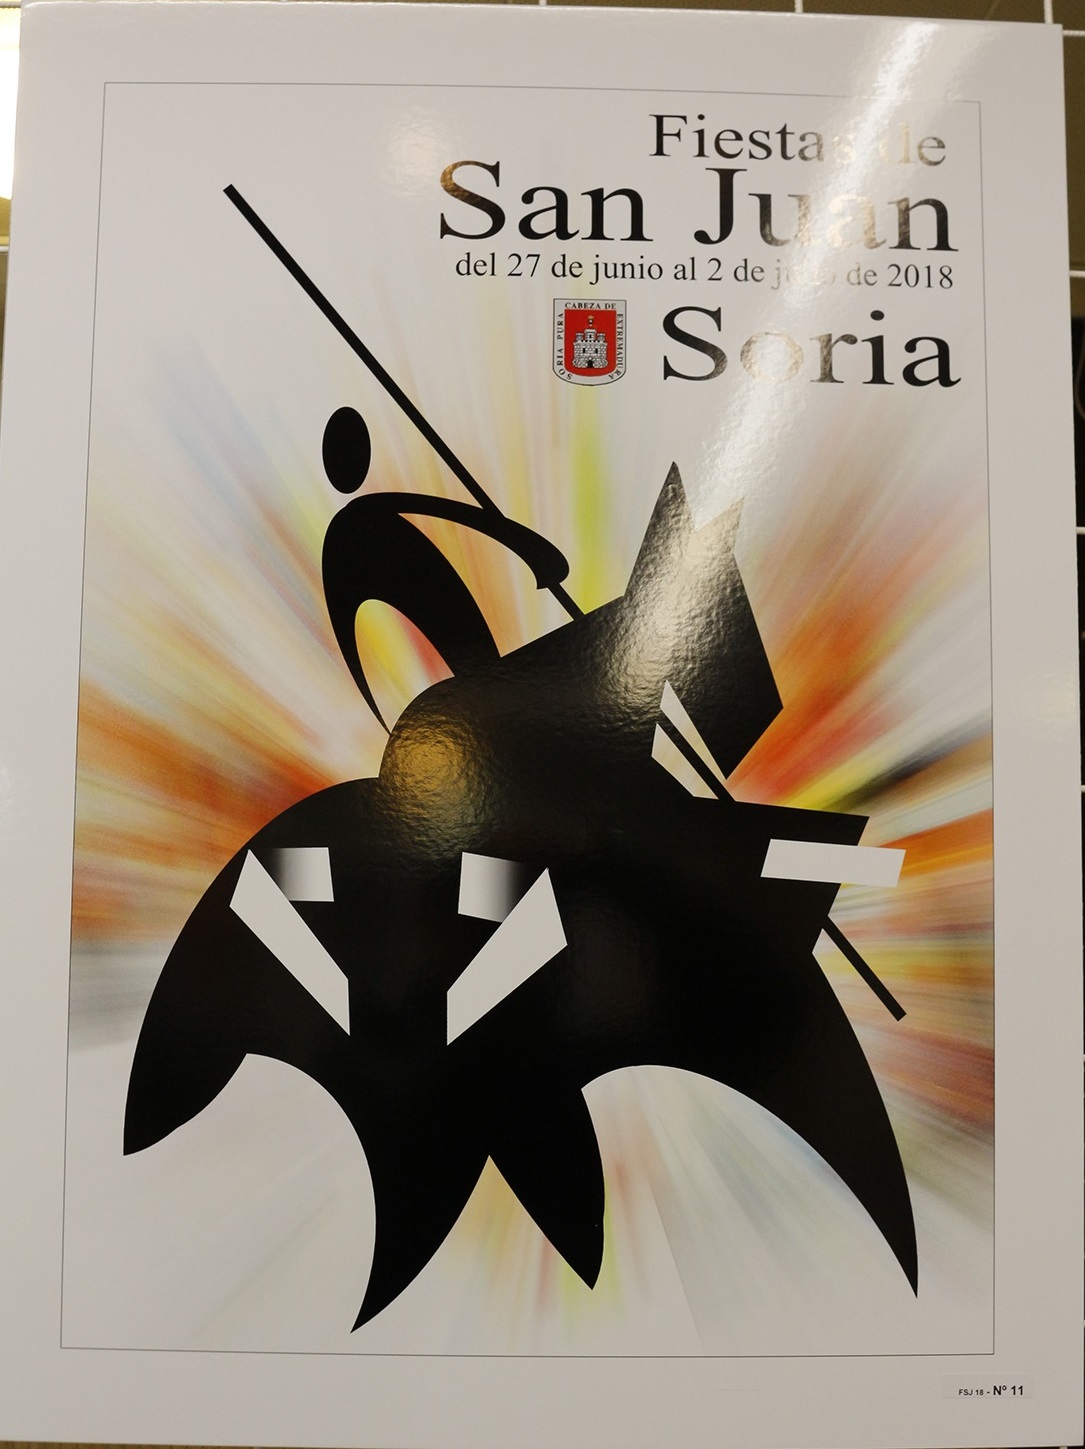 Los 9 detalles que (seguramente) no has visto de los carteles de San Juan  | Imagen 2